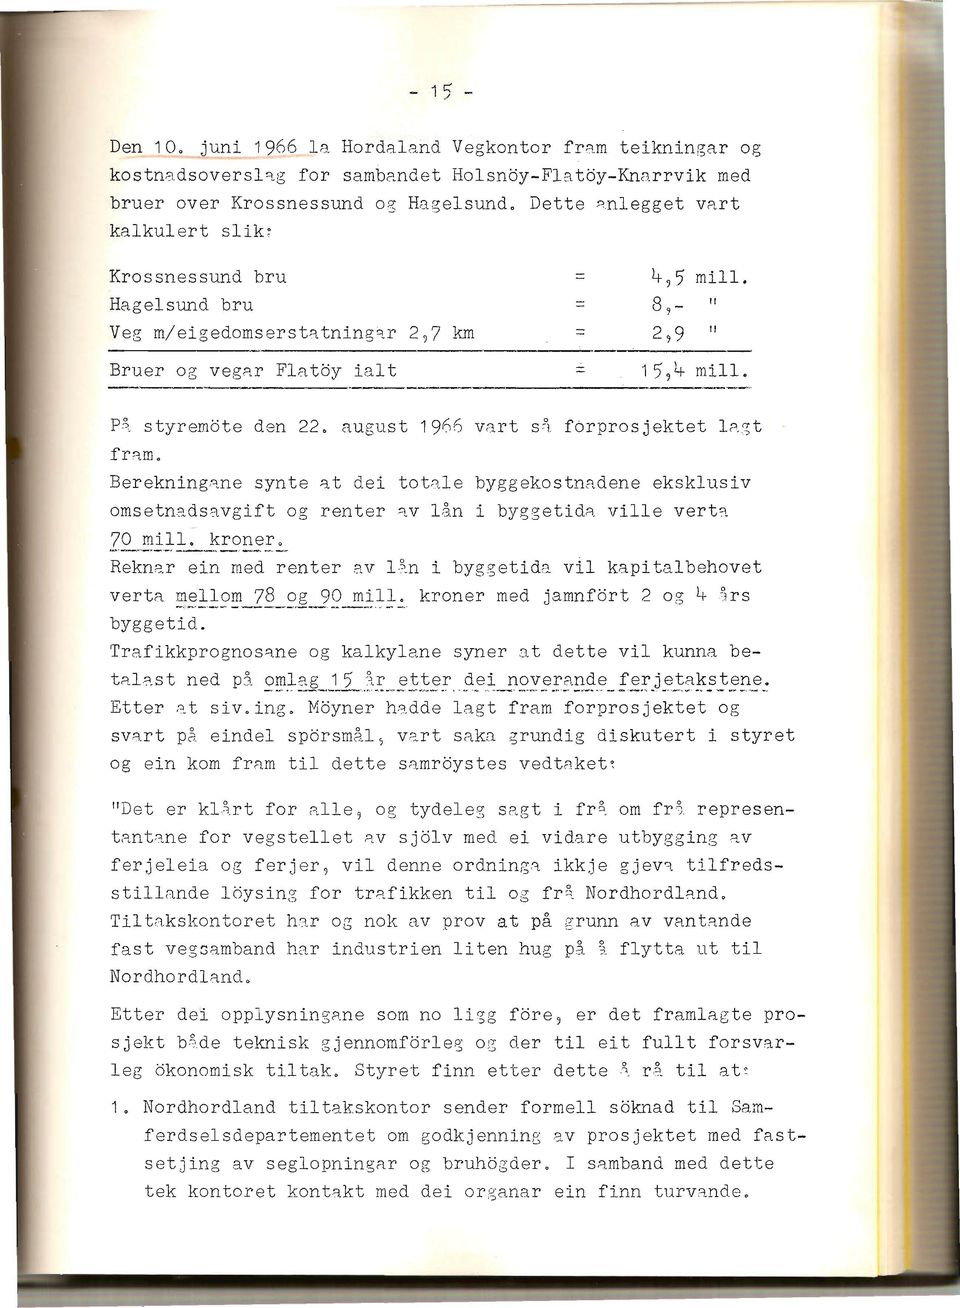 august 1966 vart s~ f6rprosjektet lagt t'r am, Berekningane synte at dei totale byggekostrtadene eksklusiv omsetnadsavgift og renter av lån i byggetida ville verta - 70 mill. kroner.